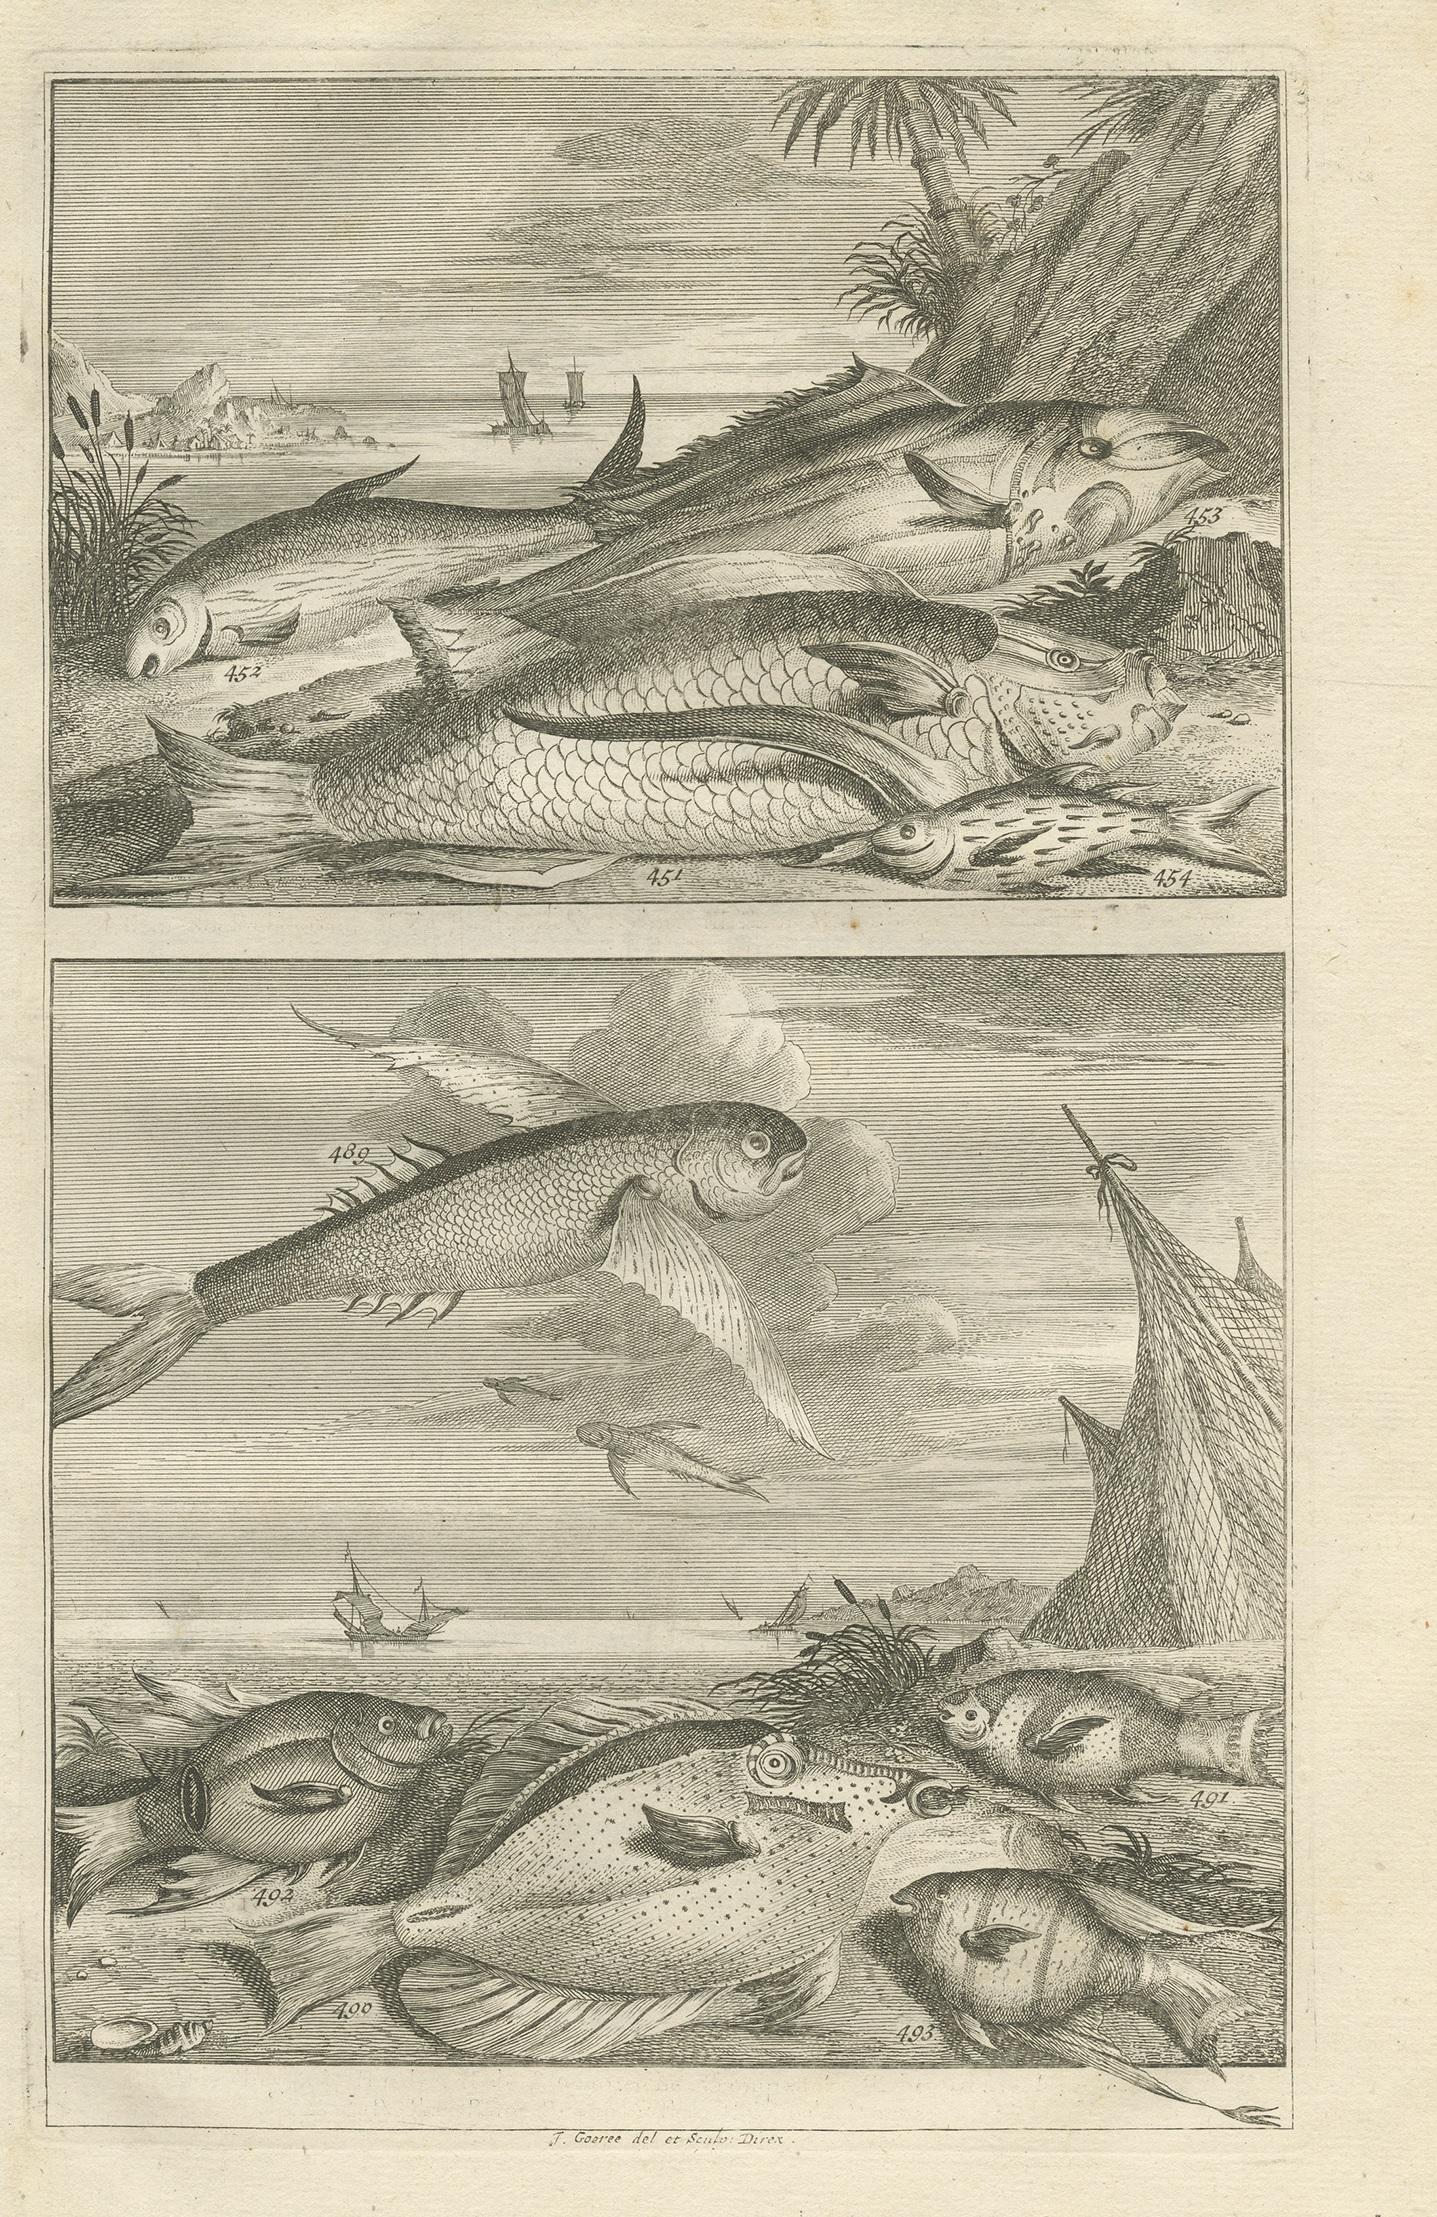 Tirage sans titre de diverses espèces de poissons d'Indonésie. Cette gravure provient de 'Oud en Nieuw Oost-Indiën' de F. Valentijn.